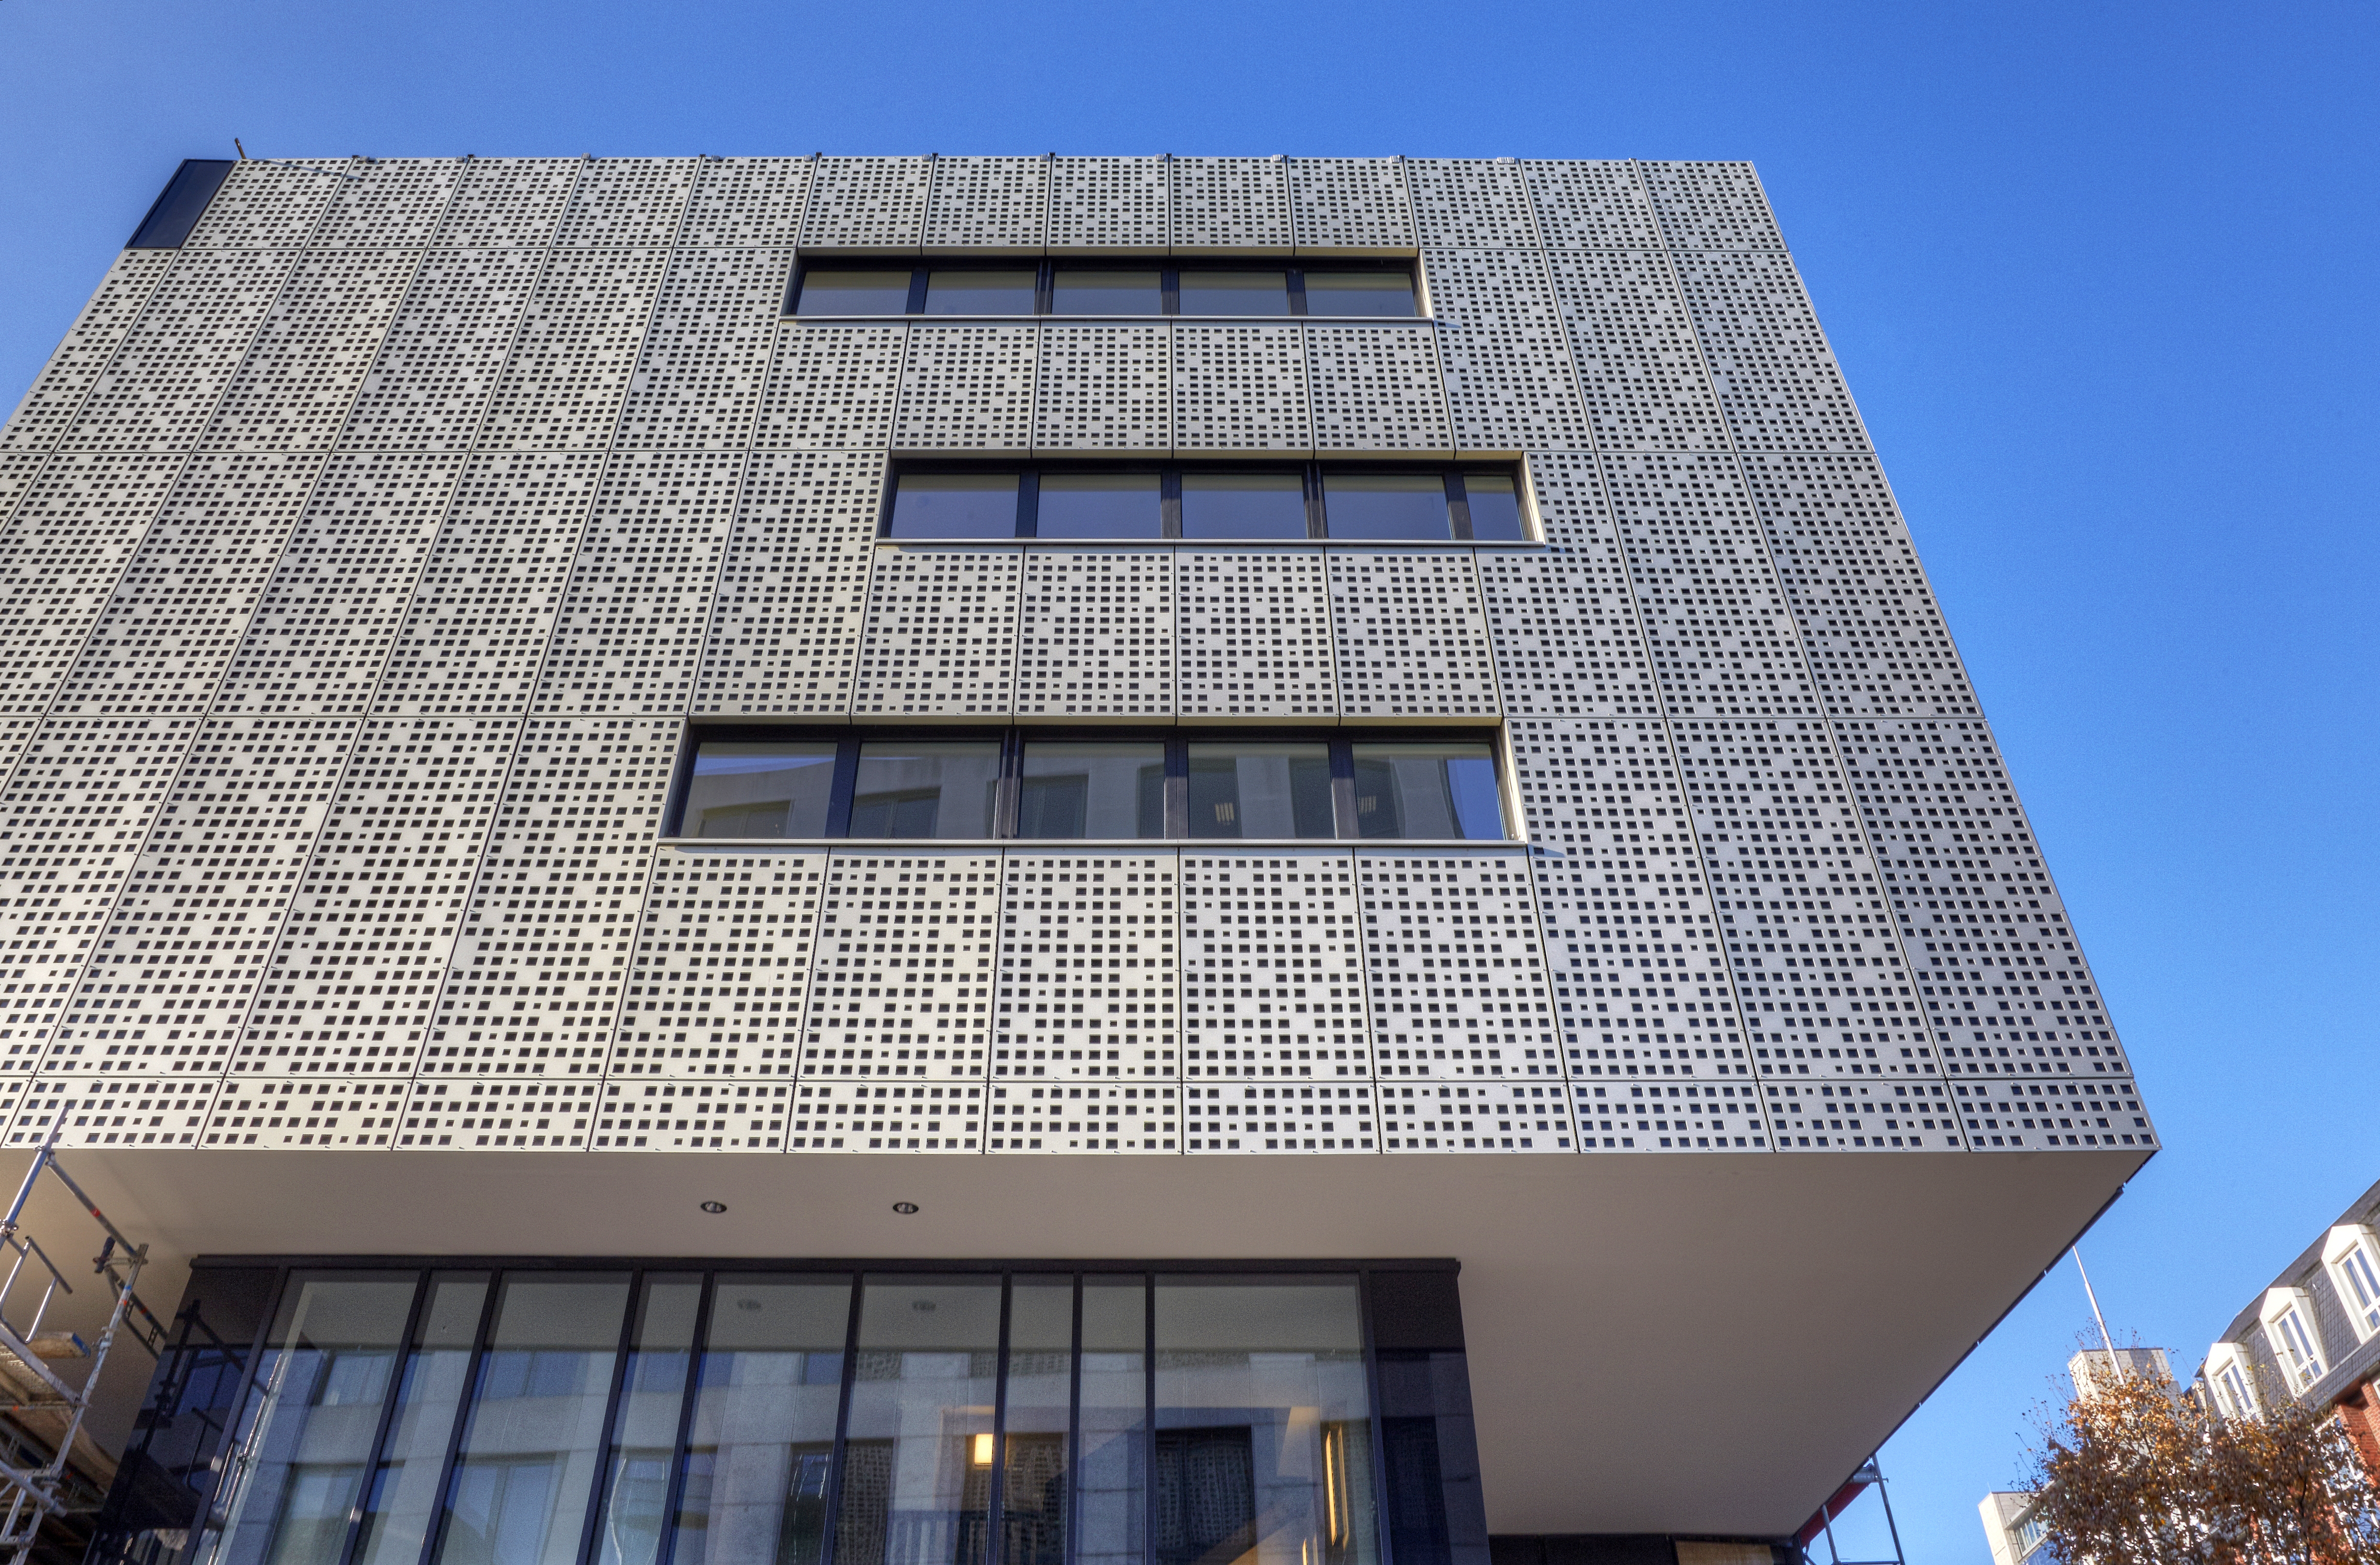 WvM Immobilien glänzt mit neuer Fassade bei Parkhausaufstockung
				